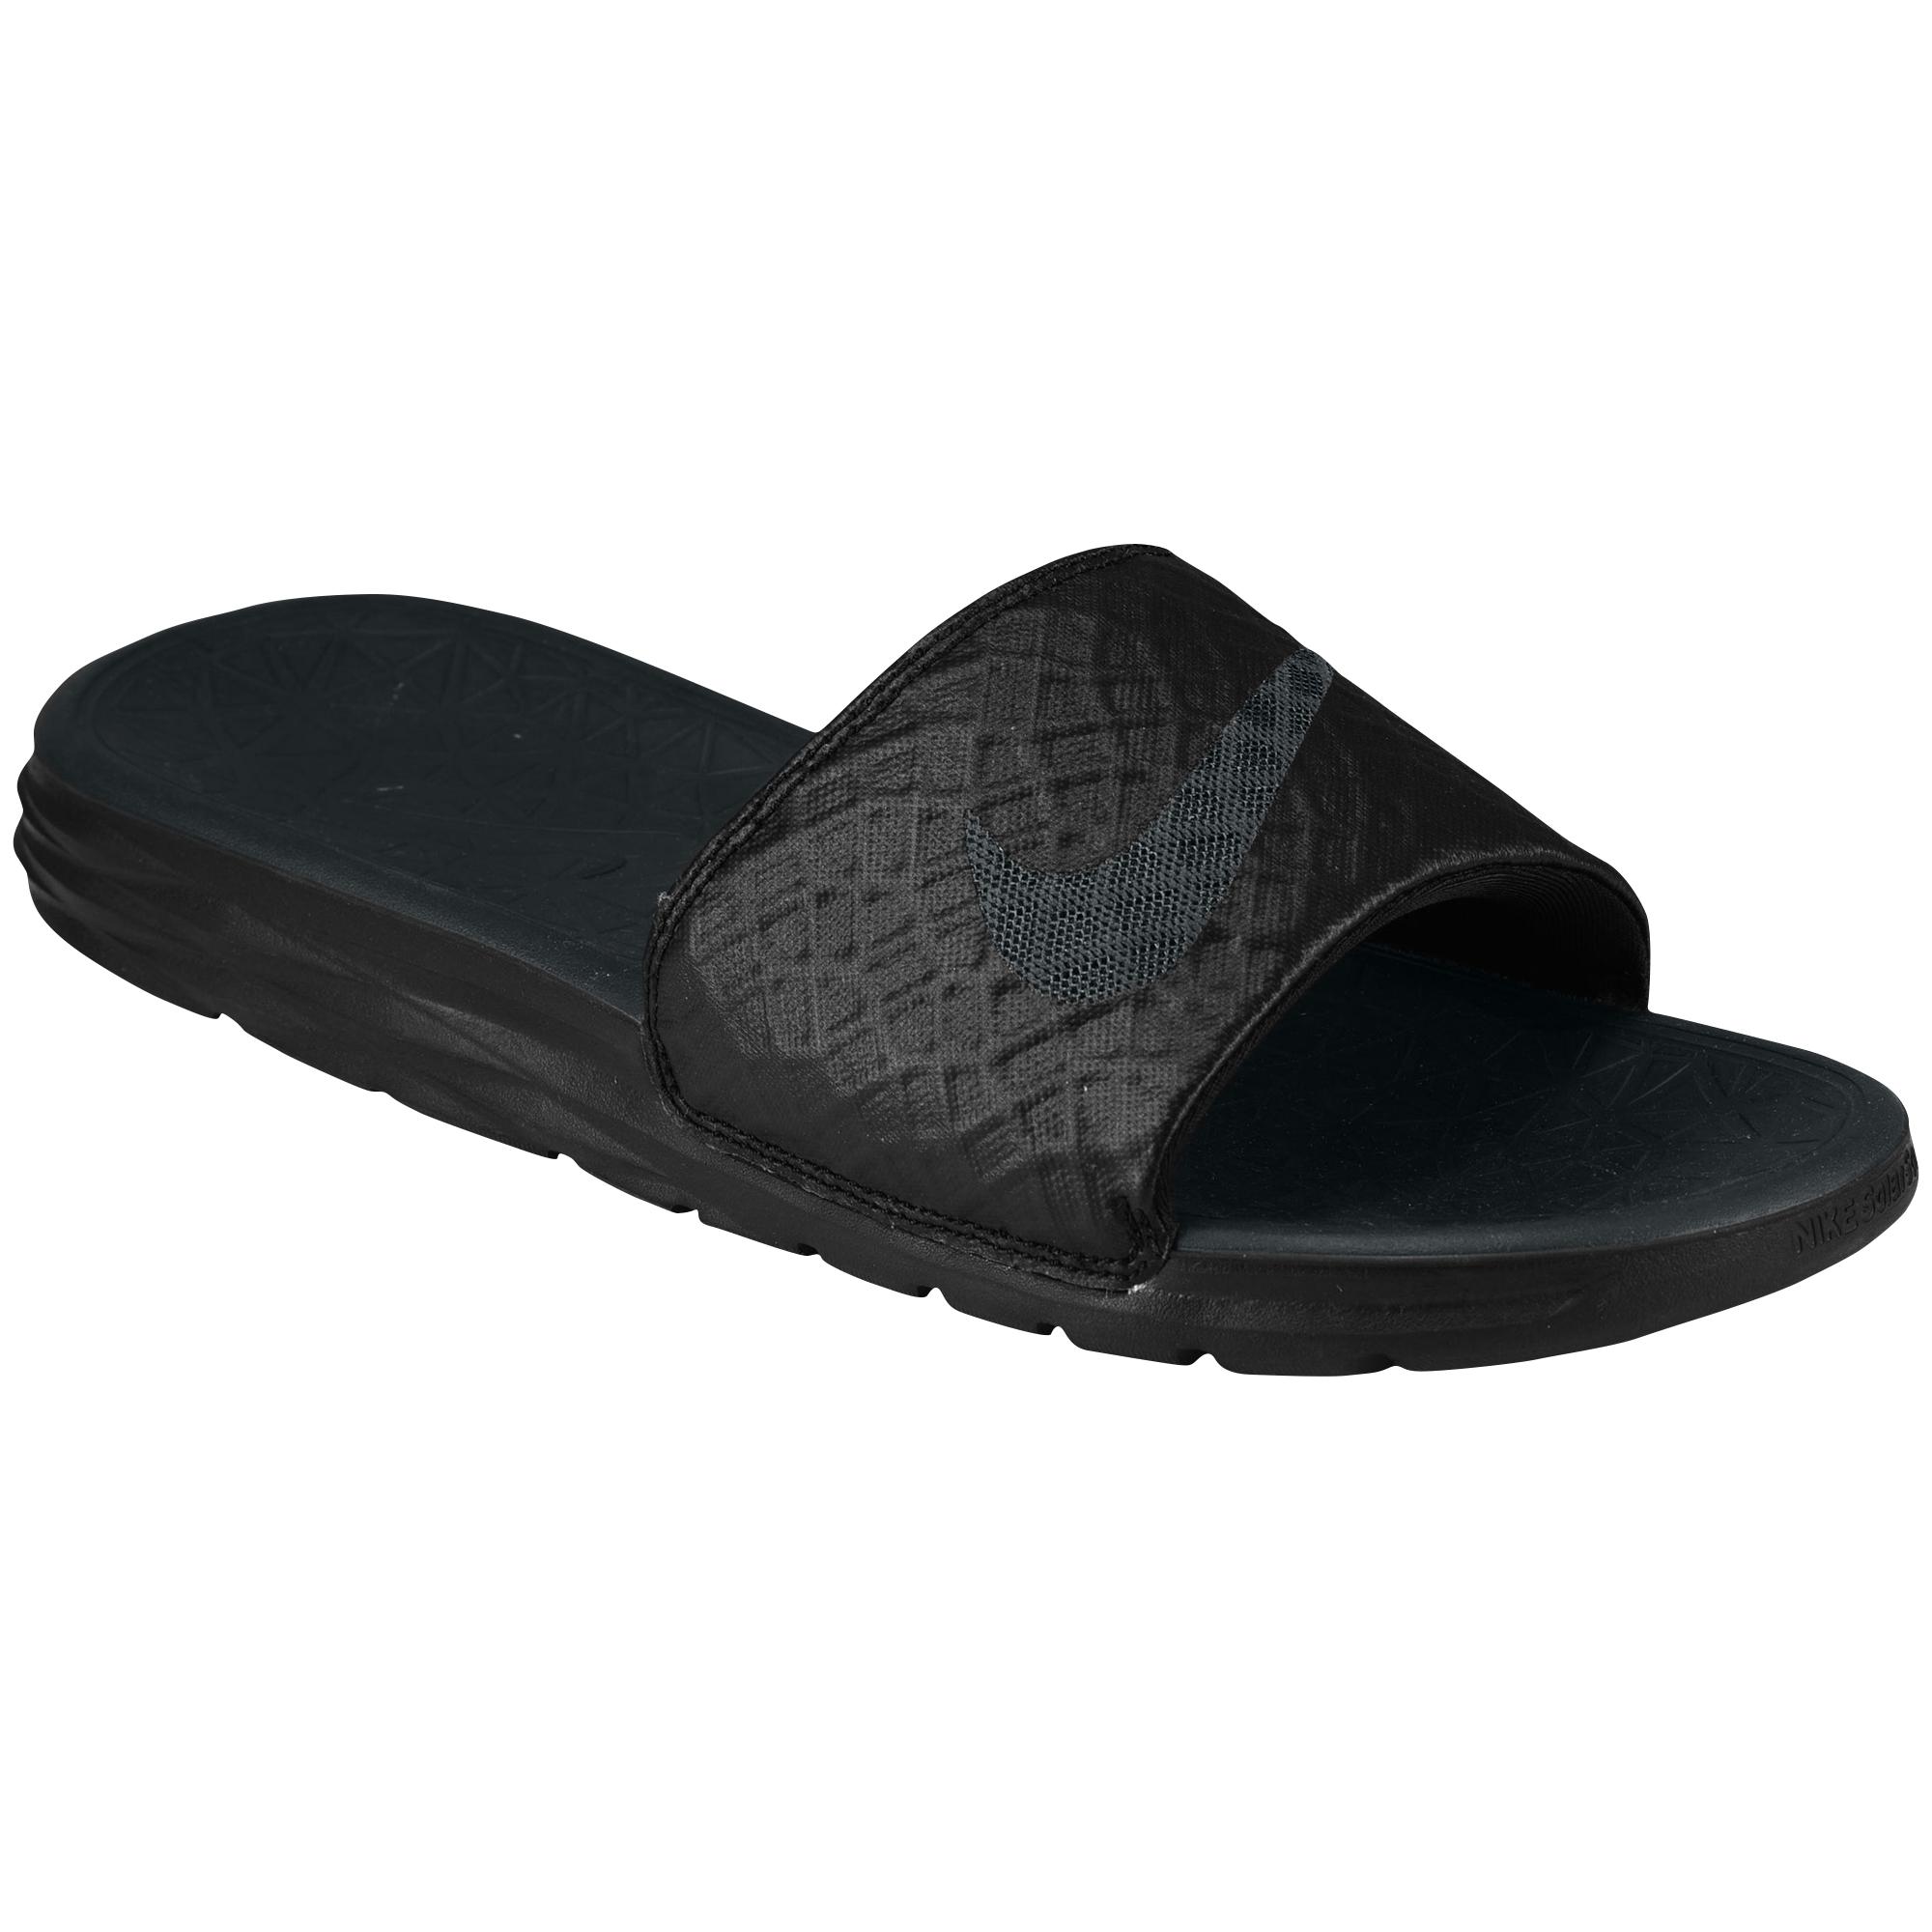 Nike Benassi Solarsoft Slide Athletic Sandal in Black Anthracite (Black)  for Men - Lyst